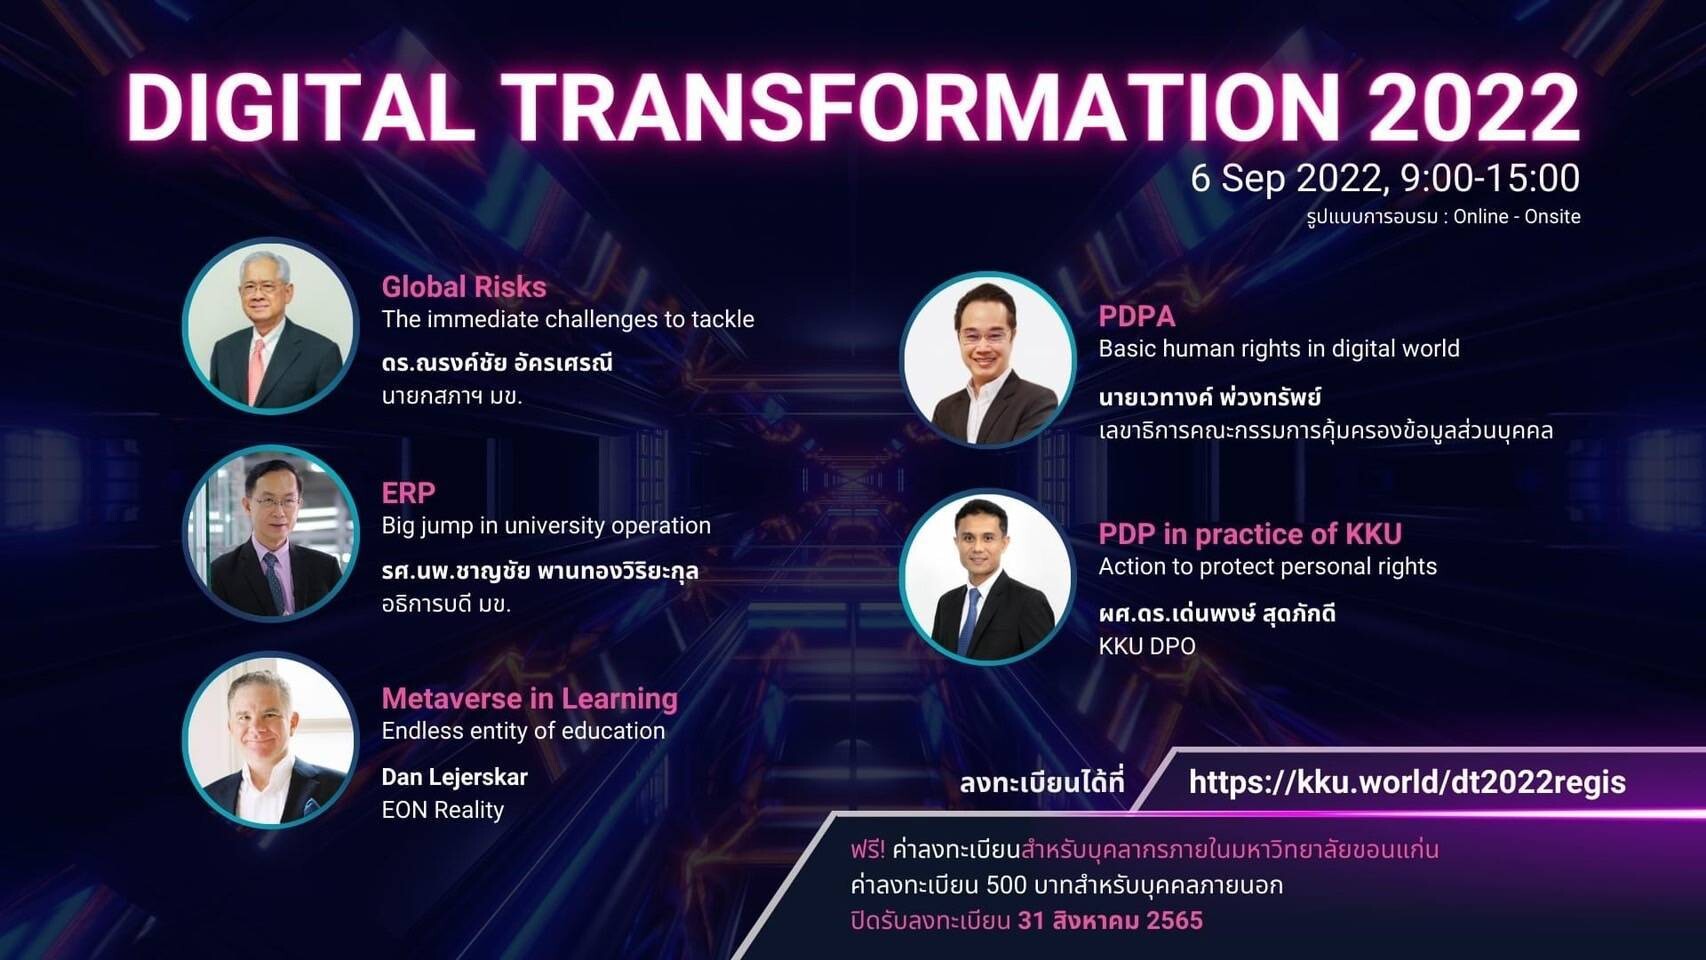 รองปลัดกระทรวงดิจิทัลฯ ร่วมงาน "Digital Transformation 2022" บรรยายหัวข้อ "PDPA Basic Human Rights in Digital World"